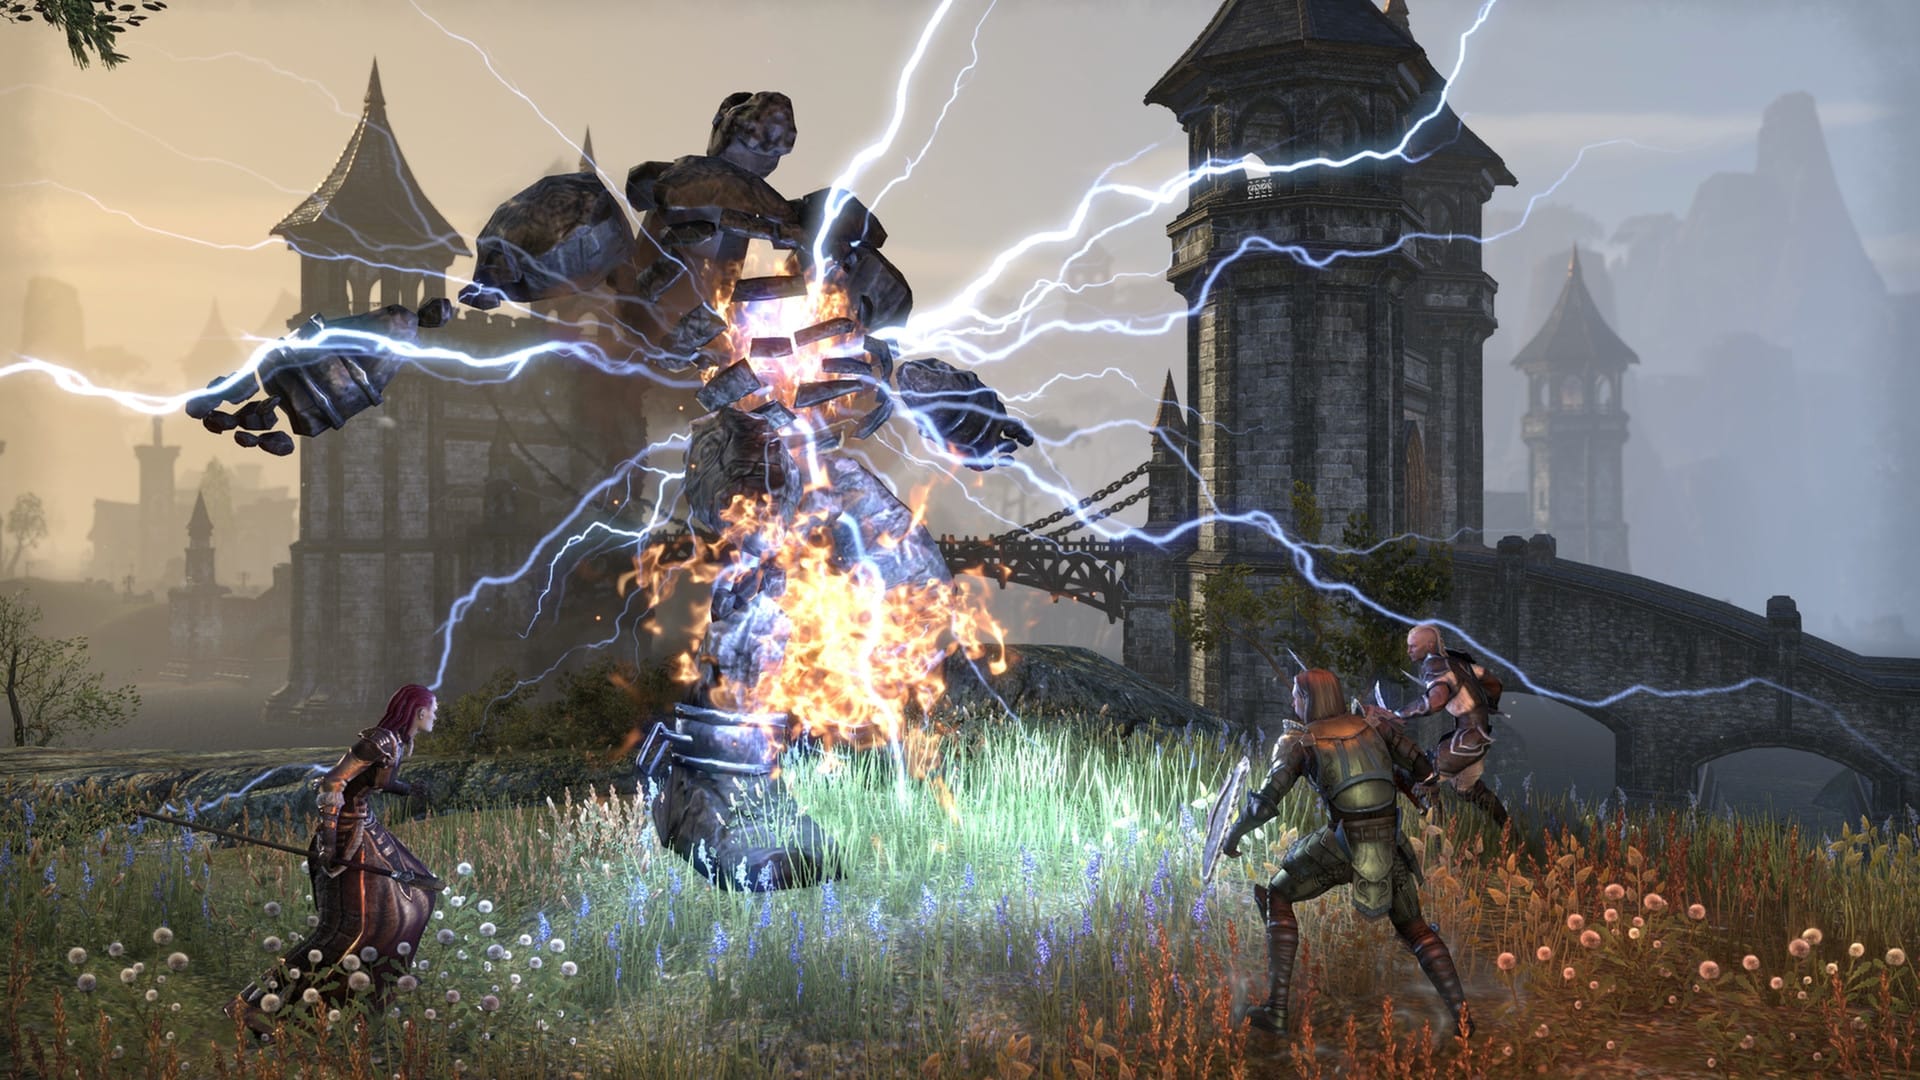 Beste MMORPG -spill: The Elder ruller på nettet. Bildet viser et parti med tre karakterer som kommer opp mot en stor steinsedning med strøm som kommer ut av det